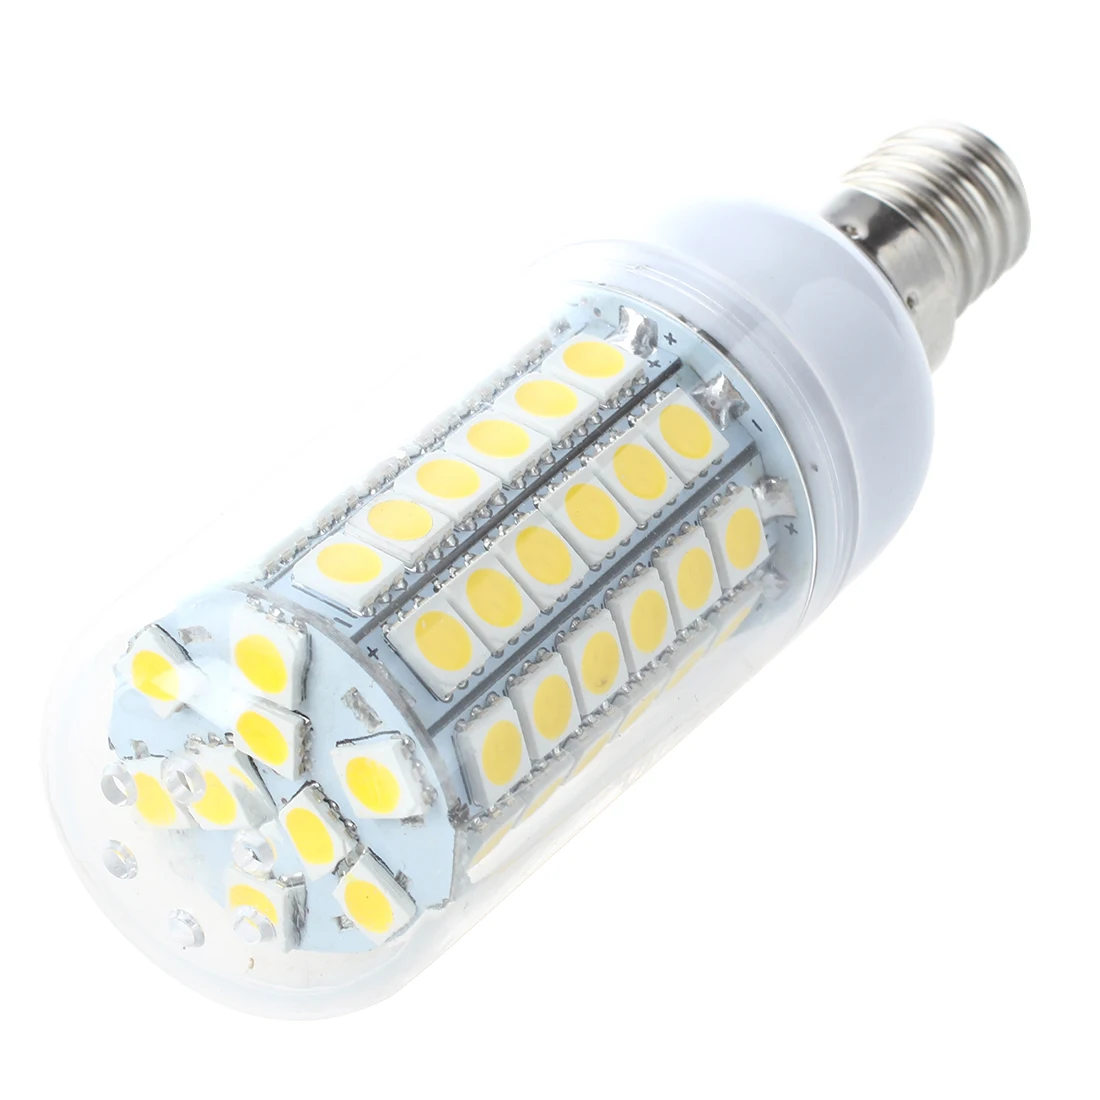 Лампа для проектора лампа теплый белый 8 Вт E14 69 светодио дный SMD 5050 AC 220 В 3000 К